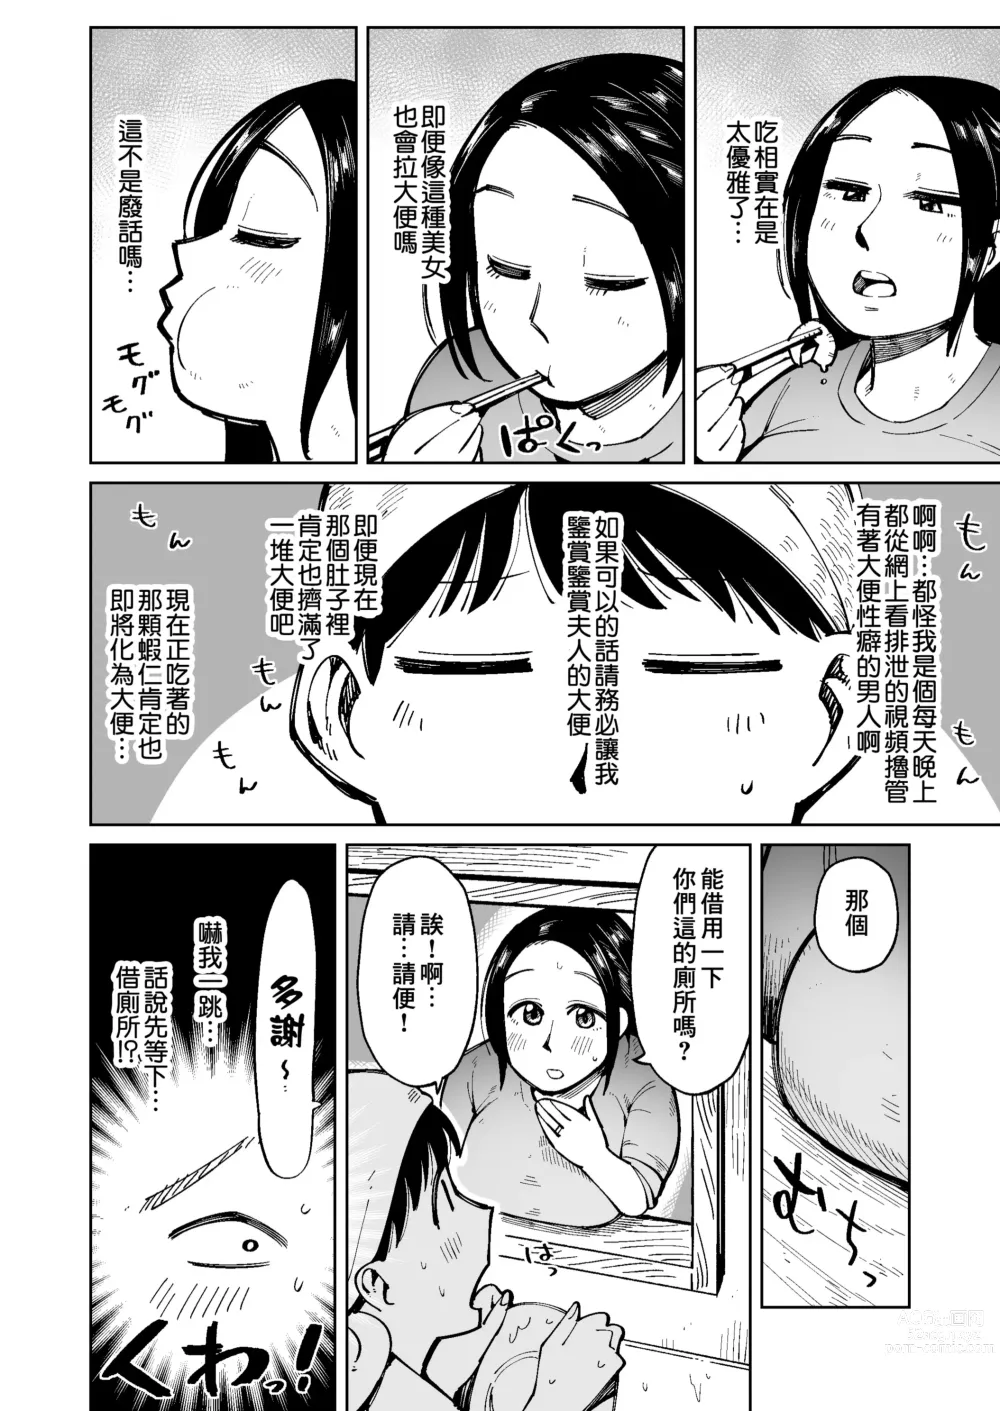 Page 3 of doujinshi 在電車上對大屁股太太進行癡漢行為時弄到大便失禁了所以就這麼操下去了。